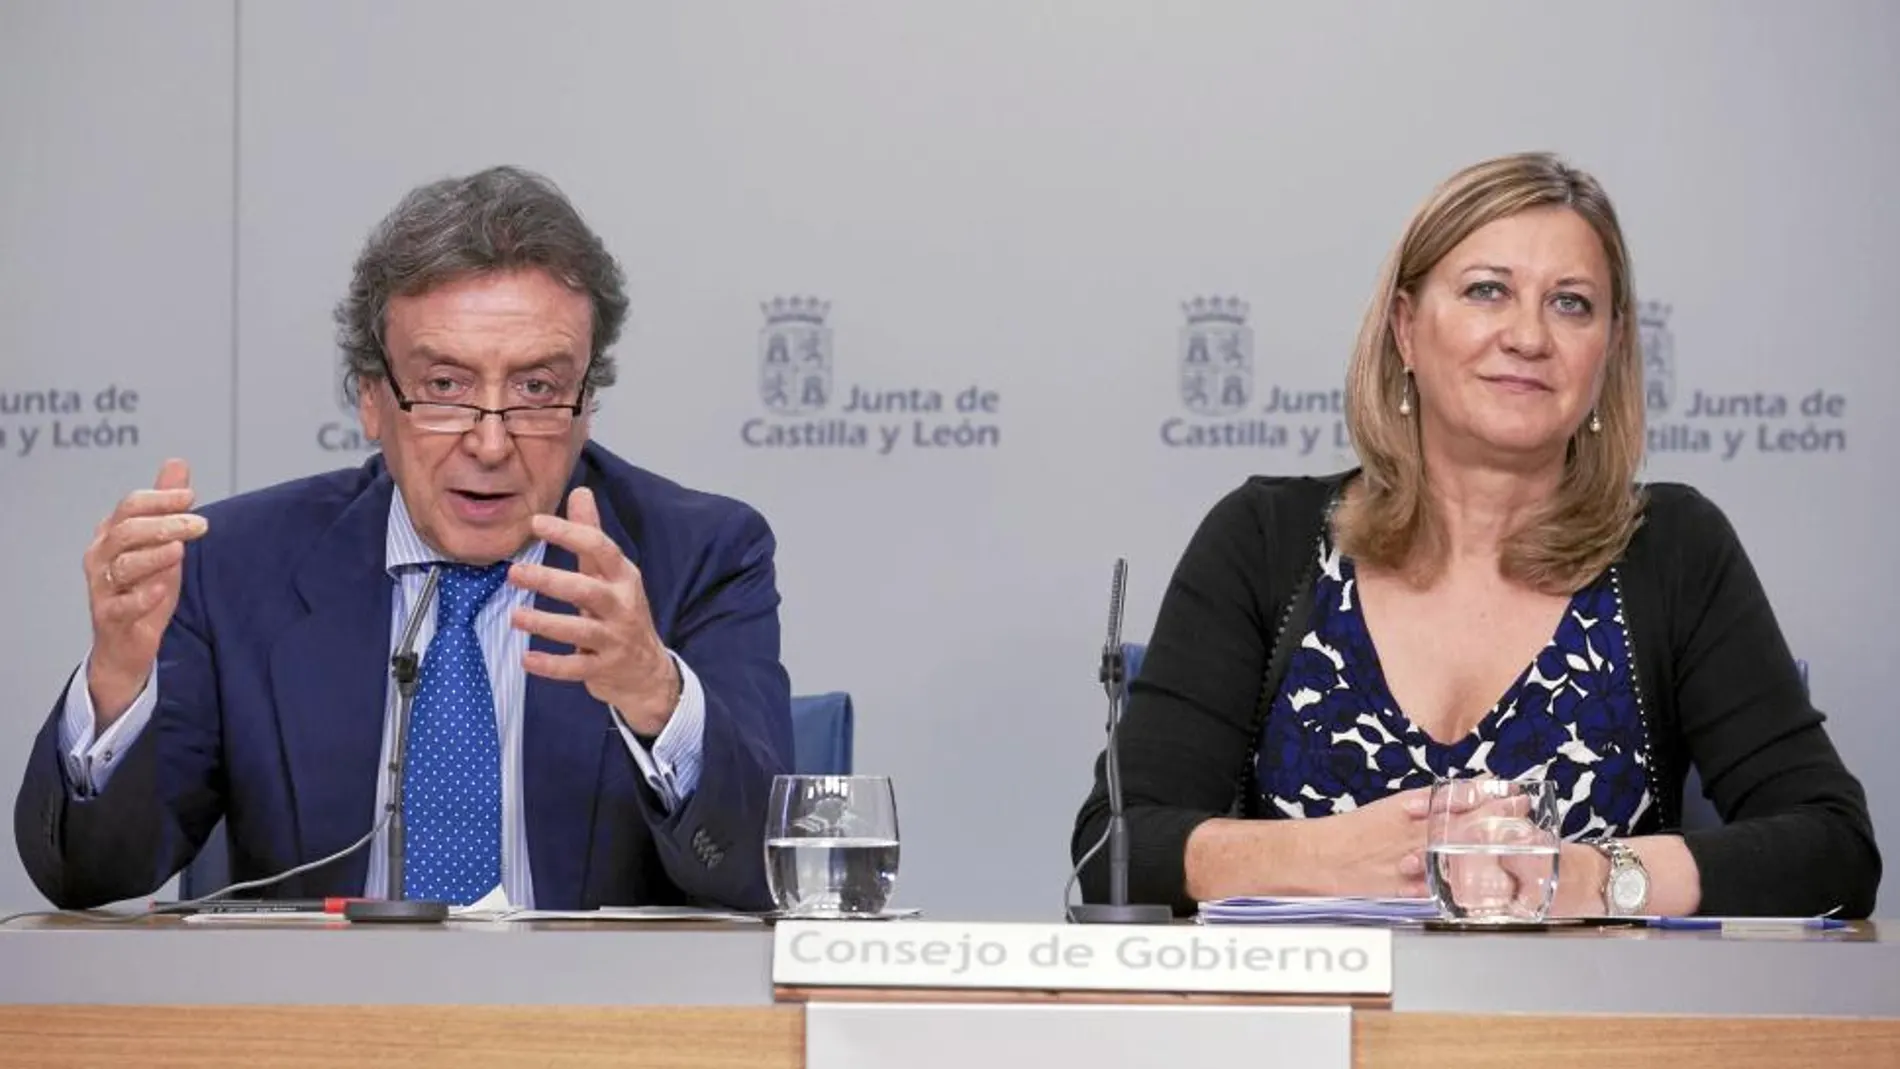 Los consejeros José Antonio de Santiago-Juárez y Pilar del Olmo explican los acuerdos del consejo de Gobierno, en el que se aprobó la Ley de Medidas